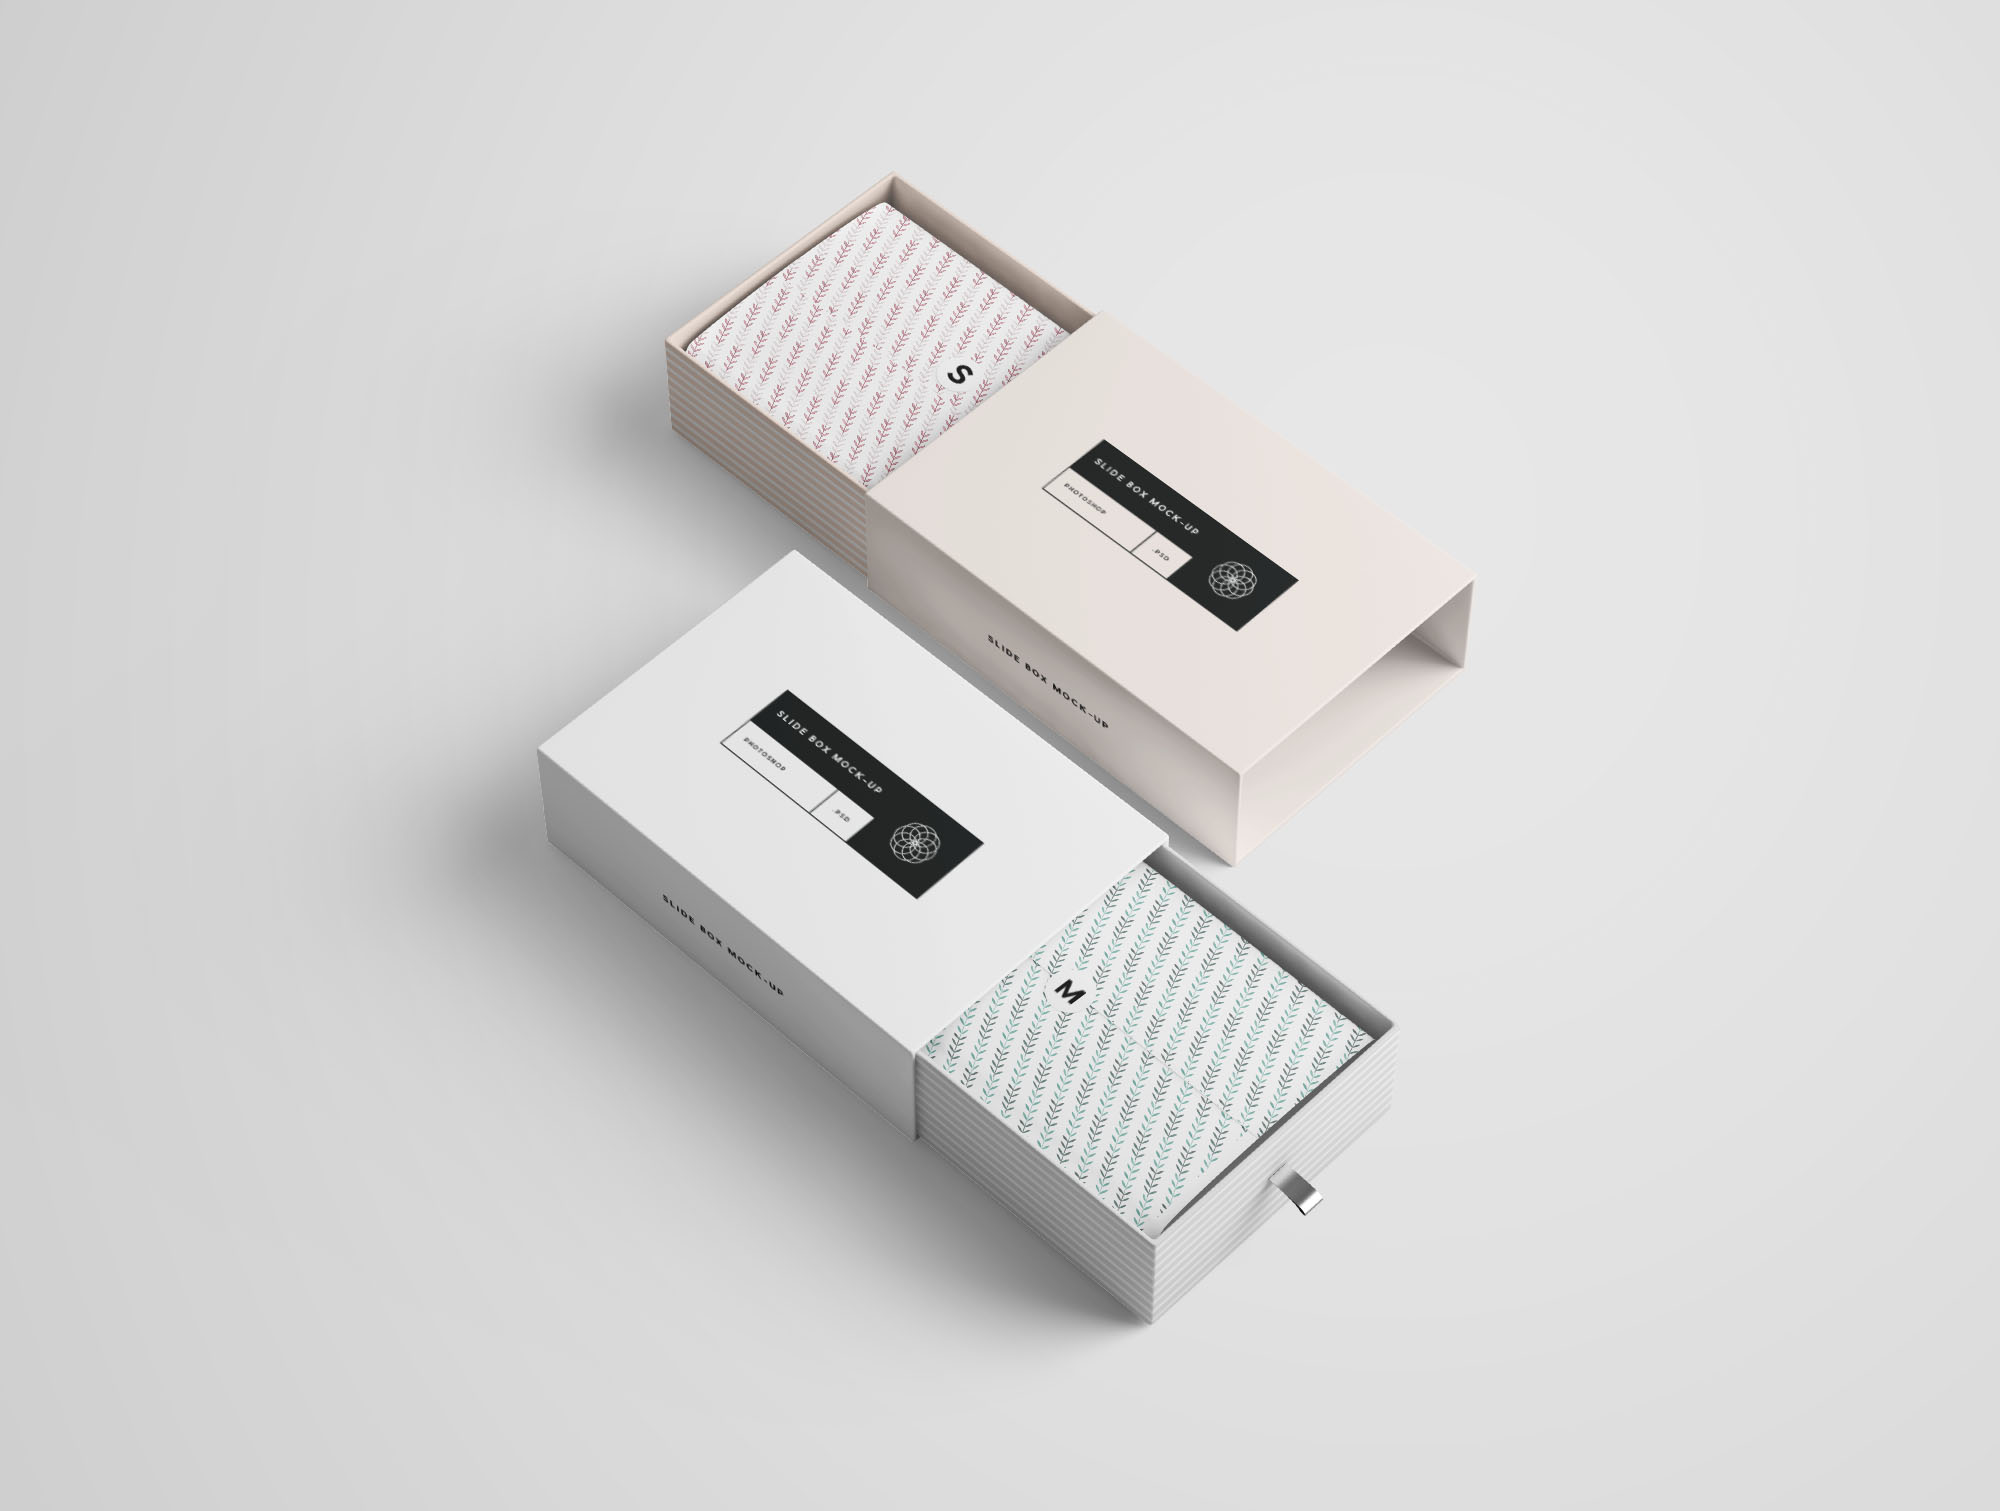 矩形抽屉式包装盒礼品盒包装设计效果图样机 Rectangle Slide Box Mockup设计素材模板